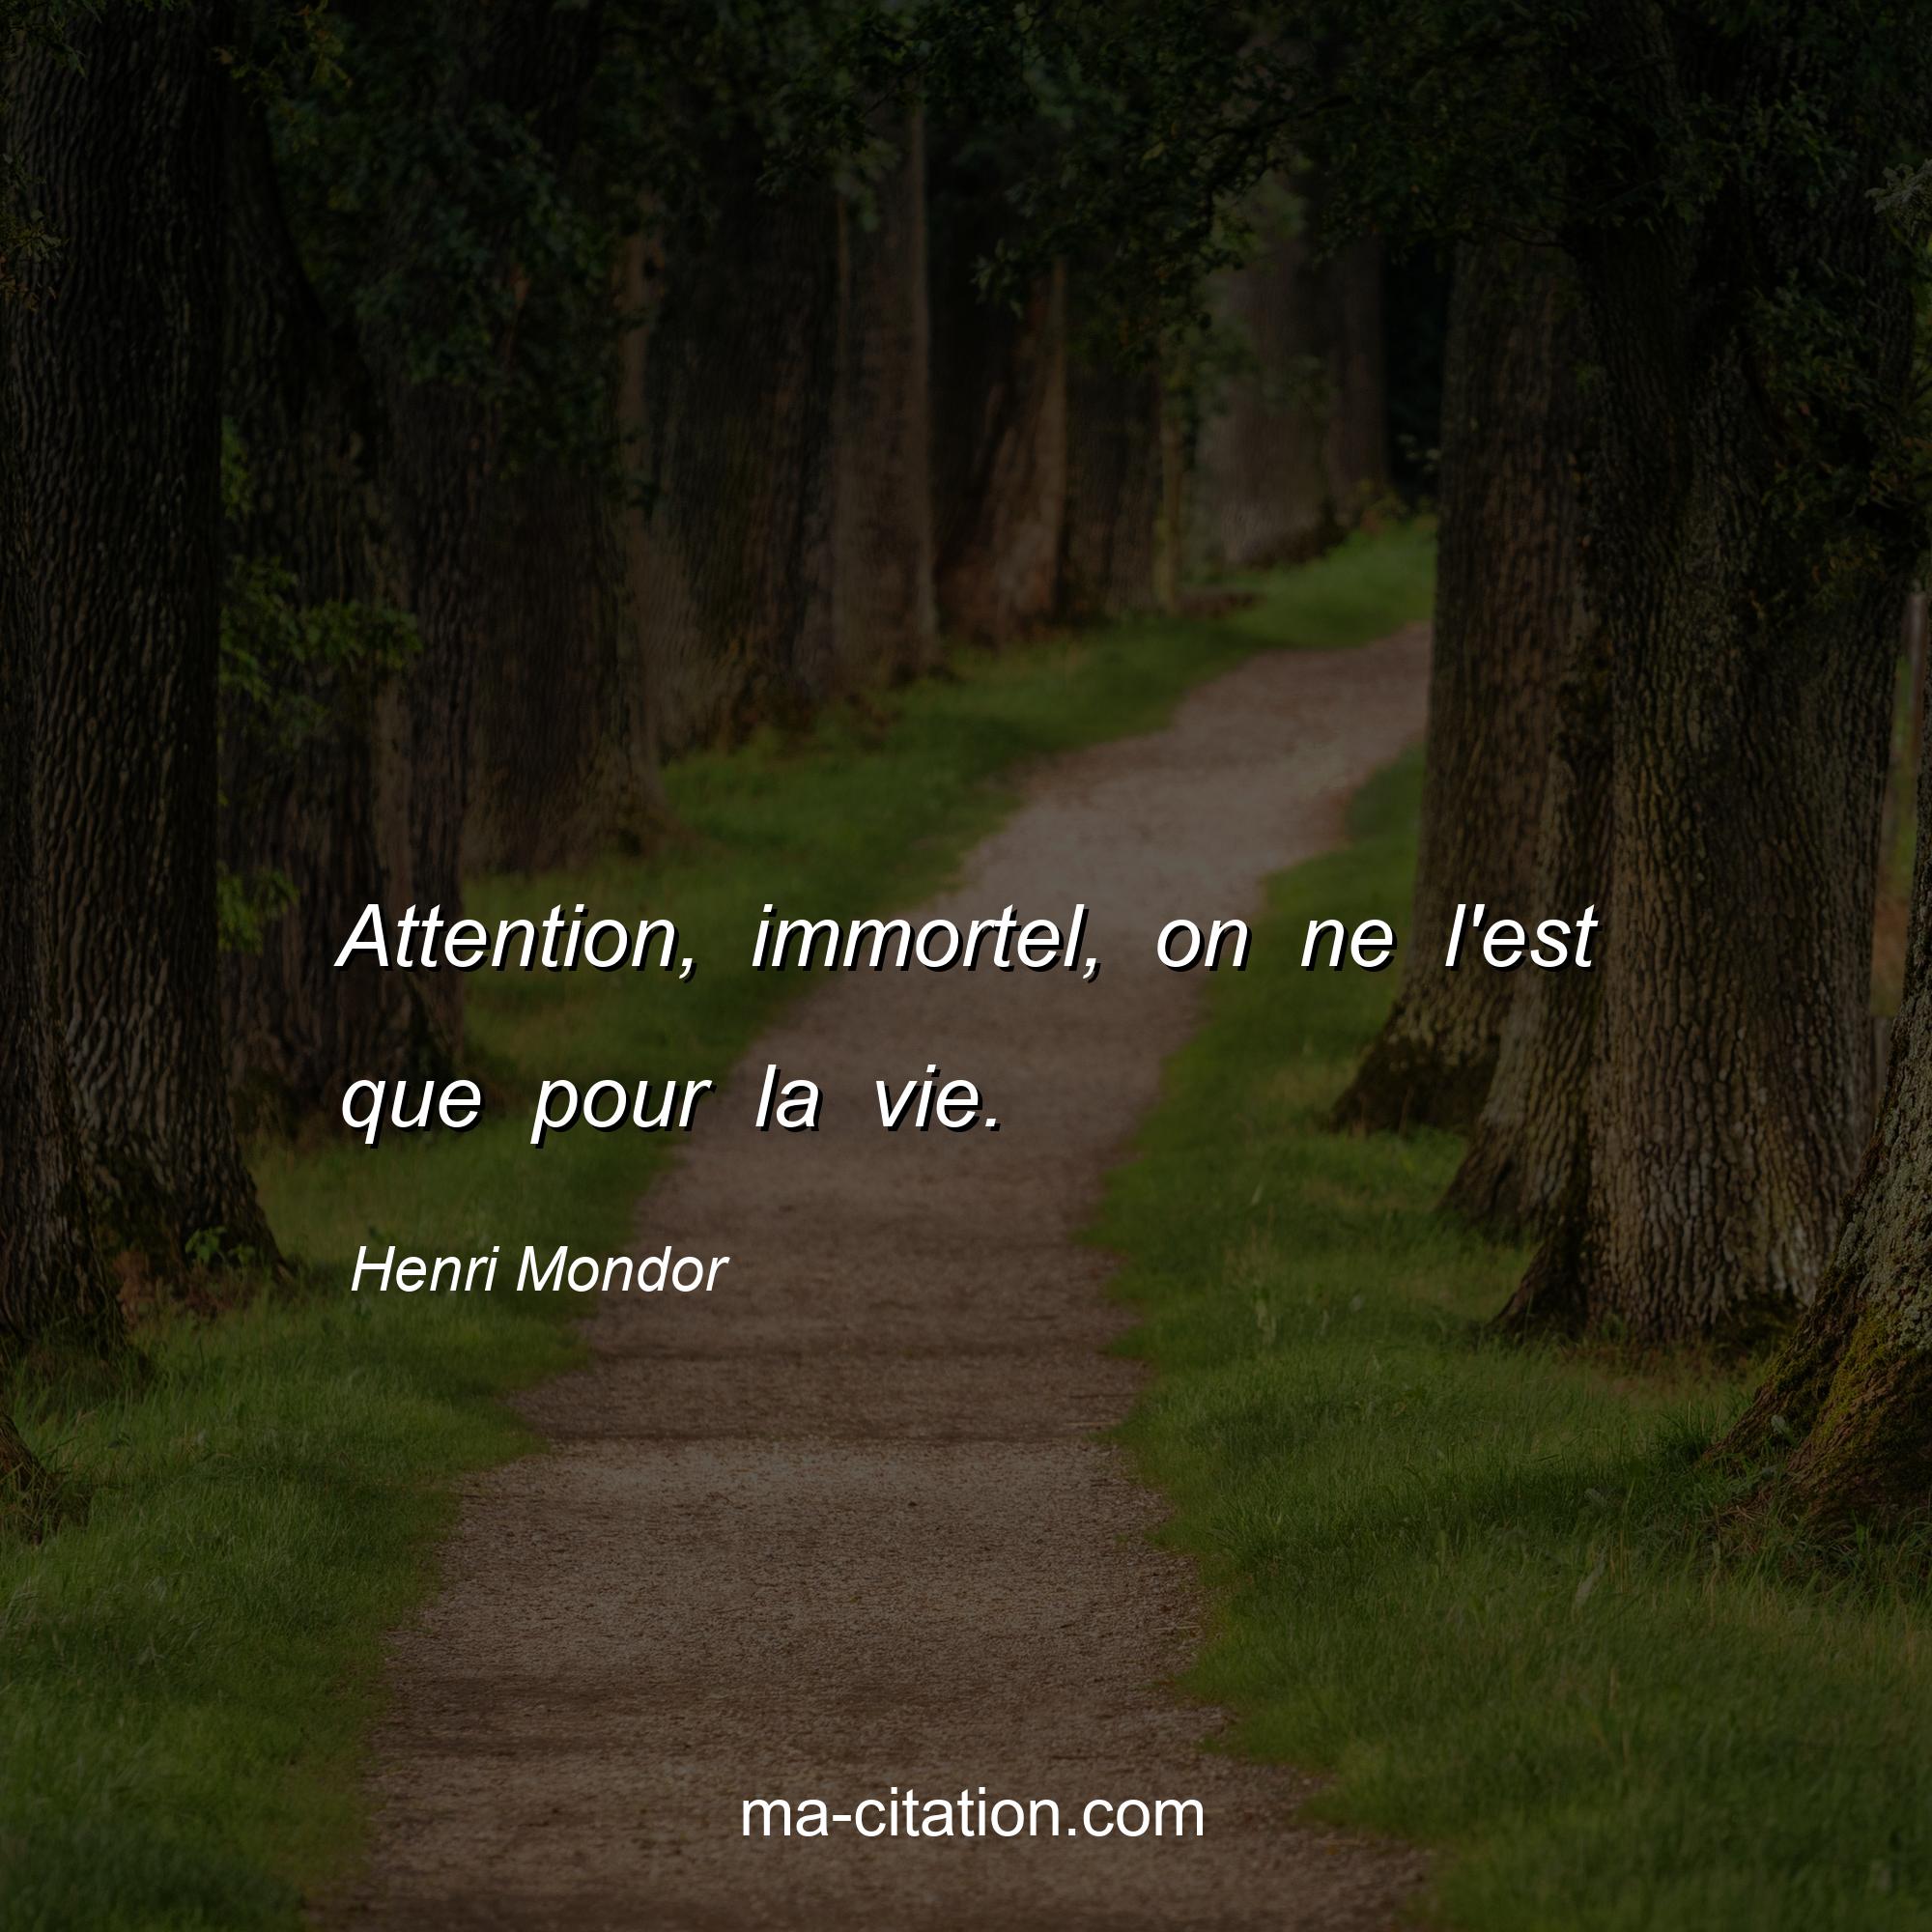 Henri Mondor : Attention, immortel, on ne l'est que pour la vie.